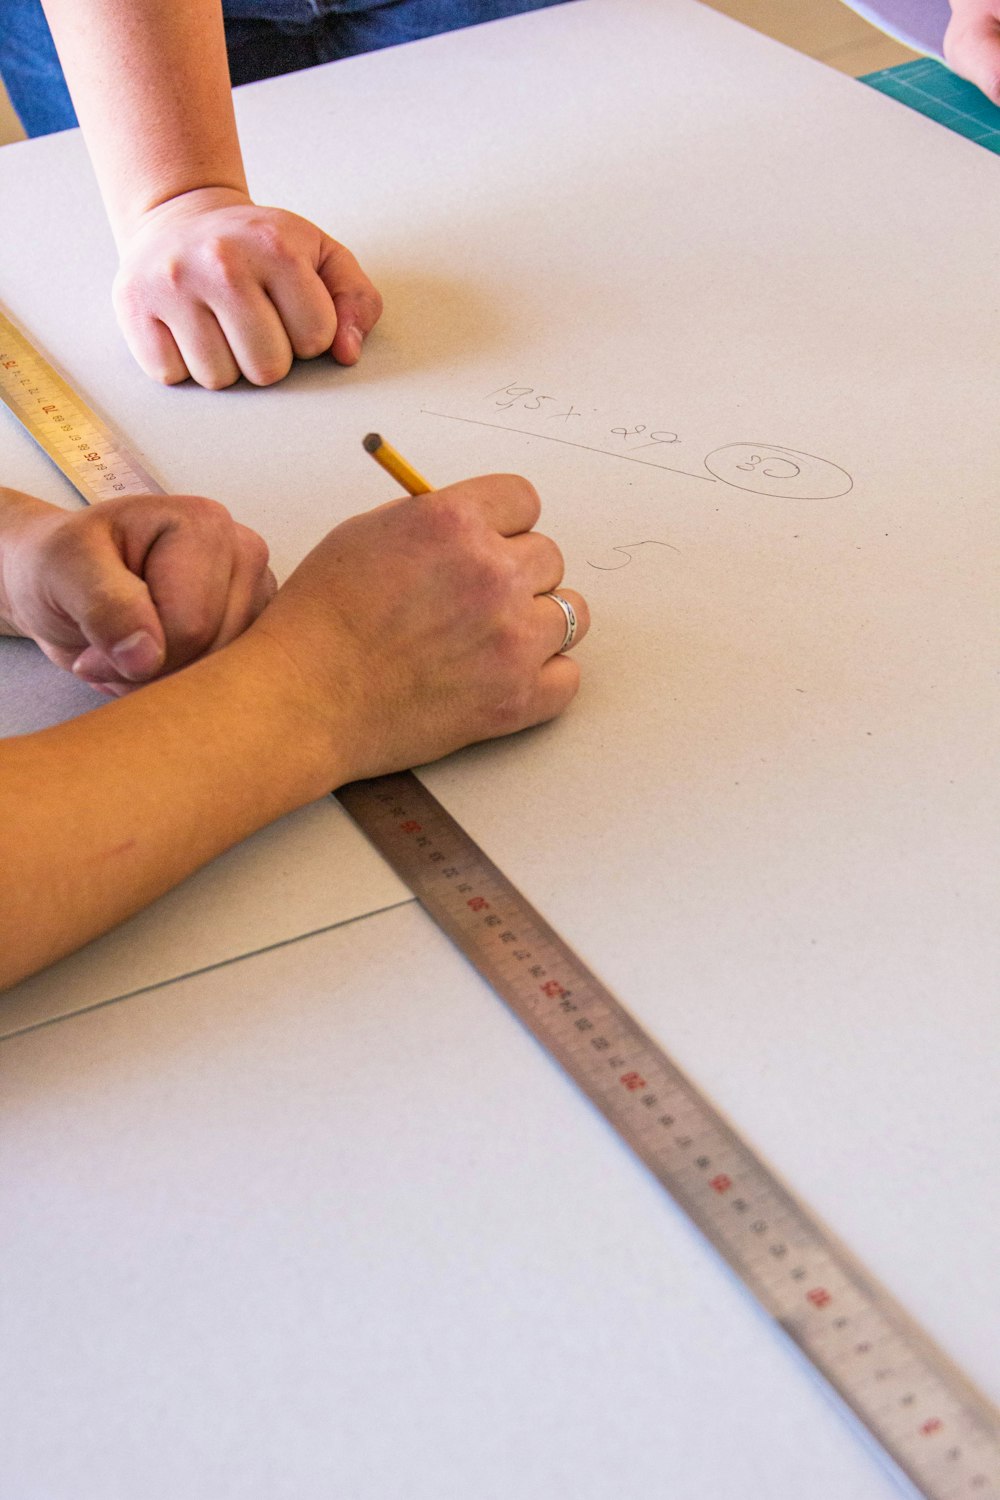 due persone stanno disegnando su un pezzo di carta